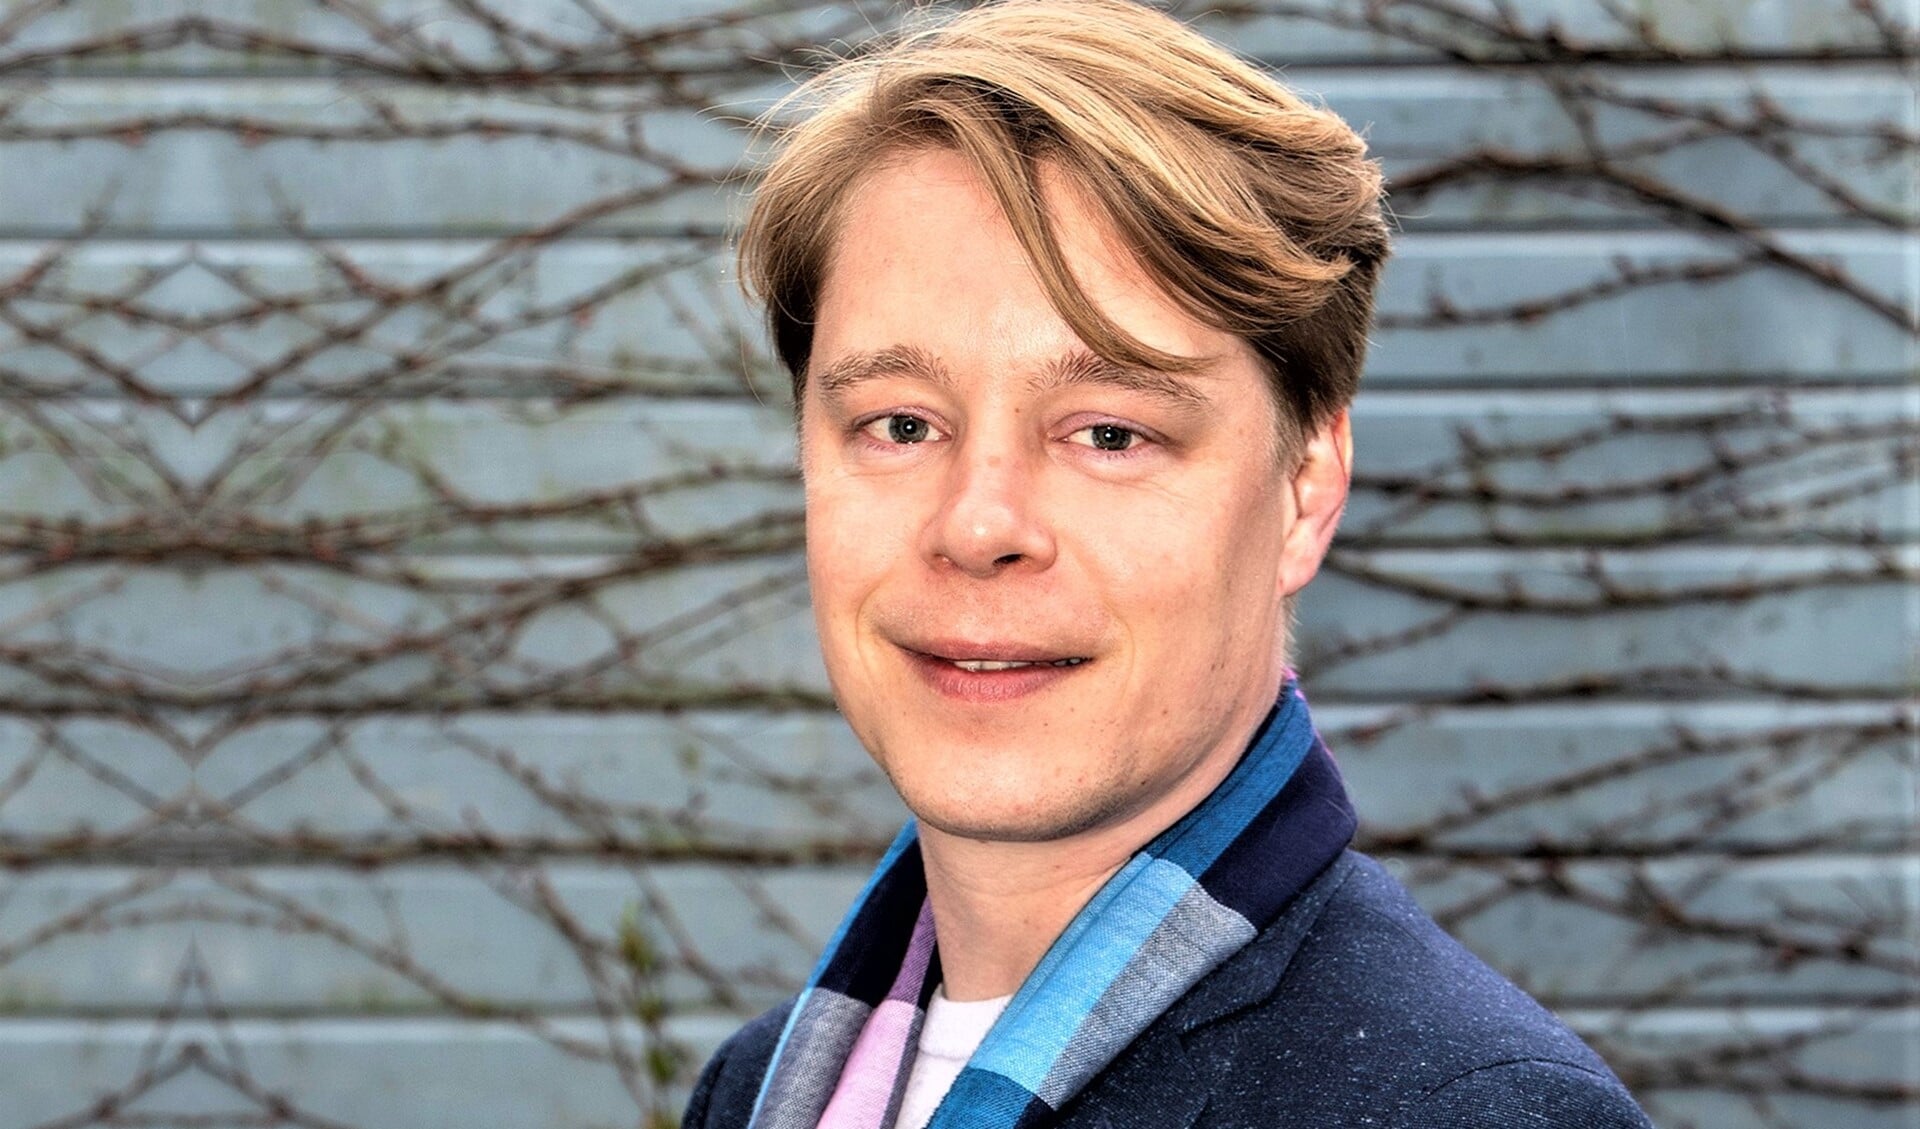 Jeroen van Rossum, de huidige fractievoorzitter van GroenLinks Leidschendam-Voorburg, is verkozen tot lijsttrekker voor GroenLinks bij de gemeenteraadsverkiezingen in maart 2022 (foto: Henk Knoester).